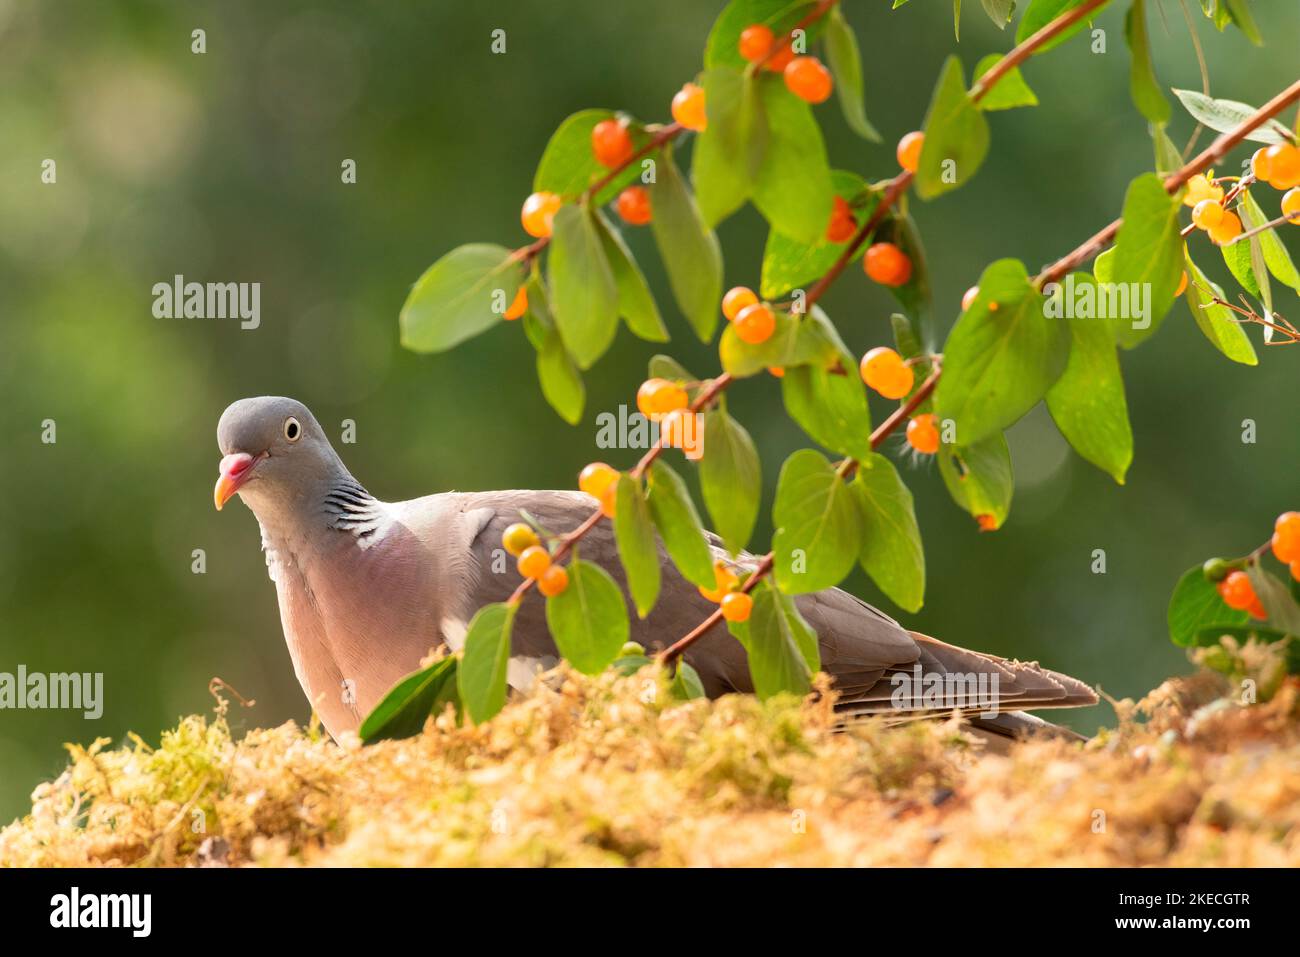 woodpigeon stand with Tatarian honeysuckle berries Stock Photo